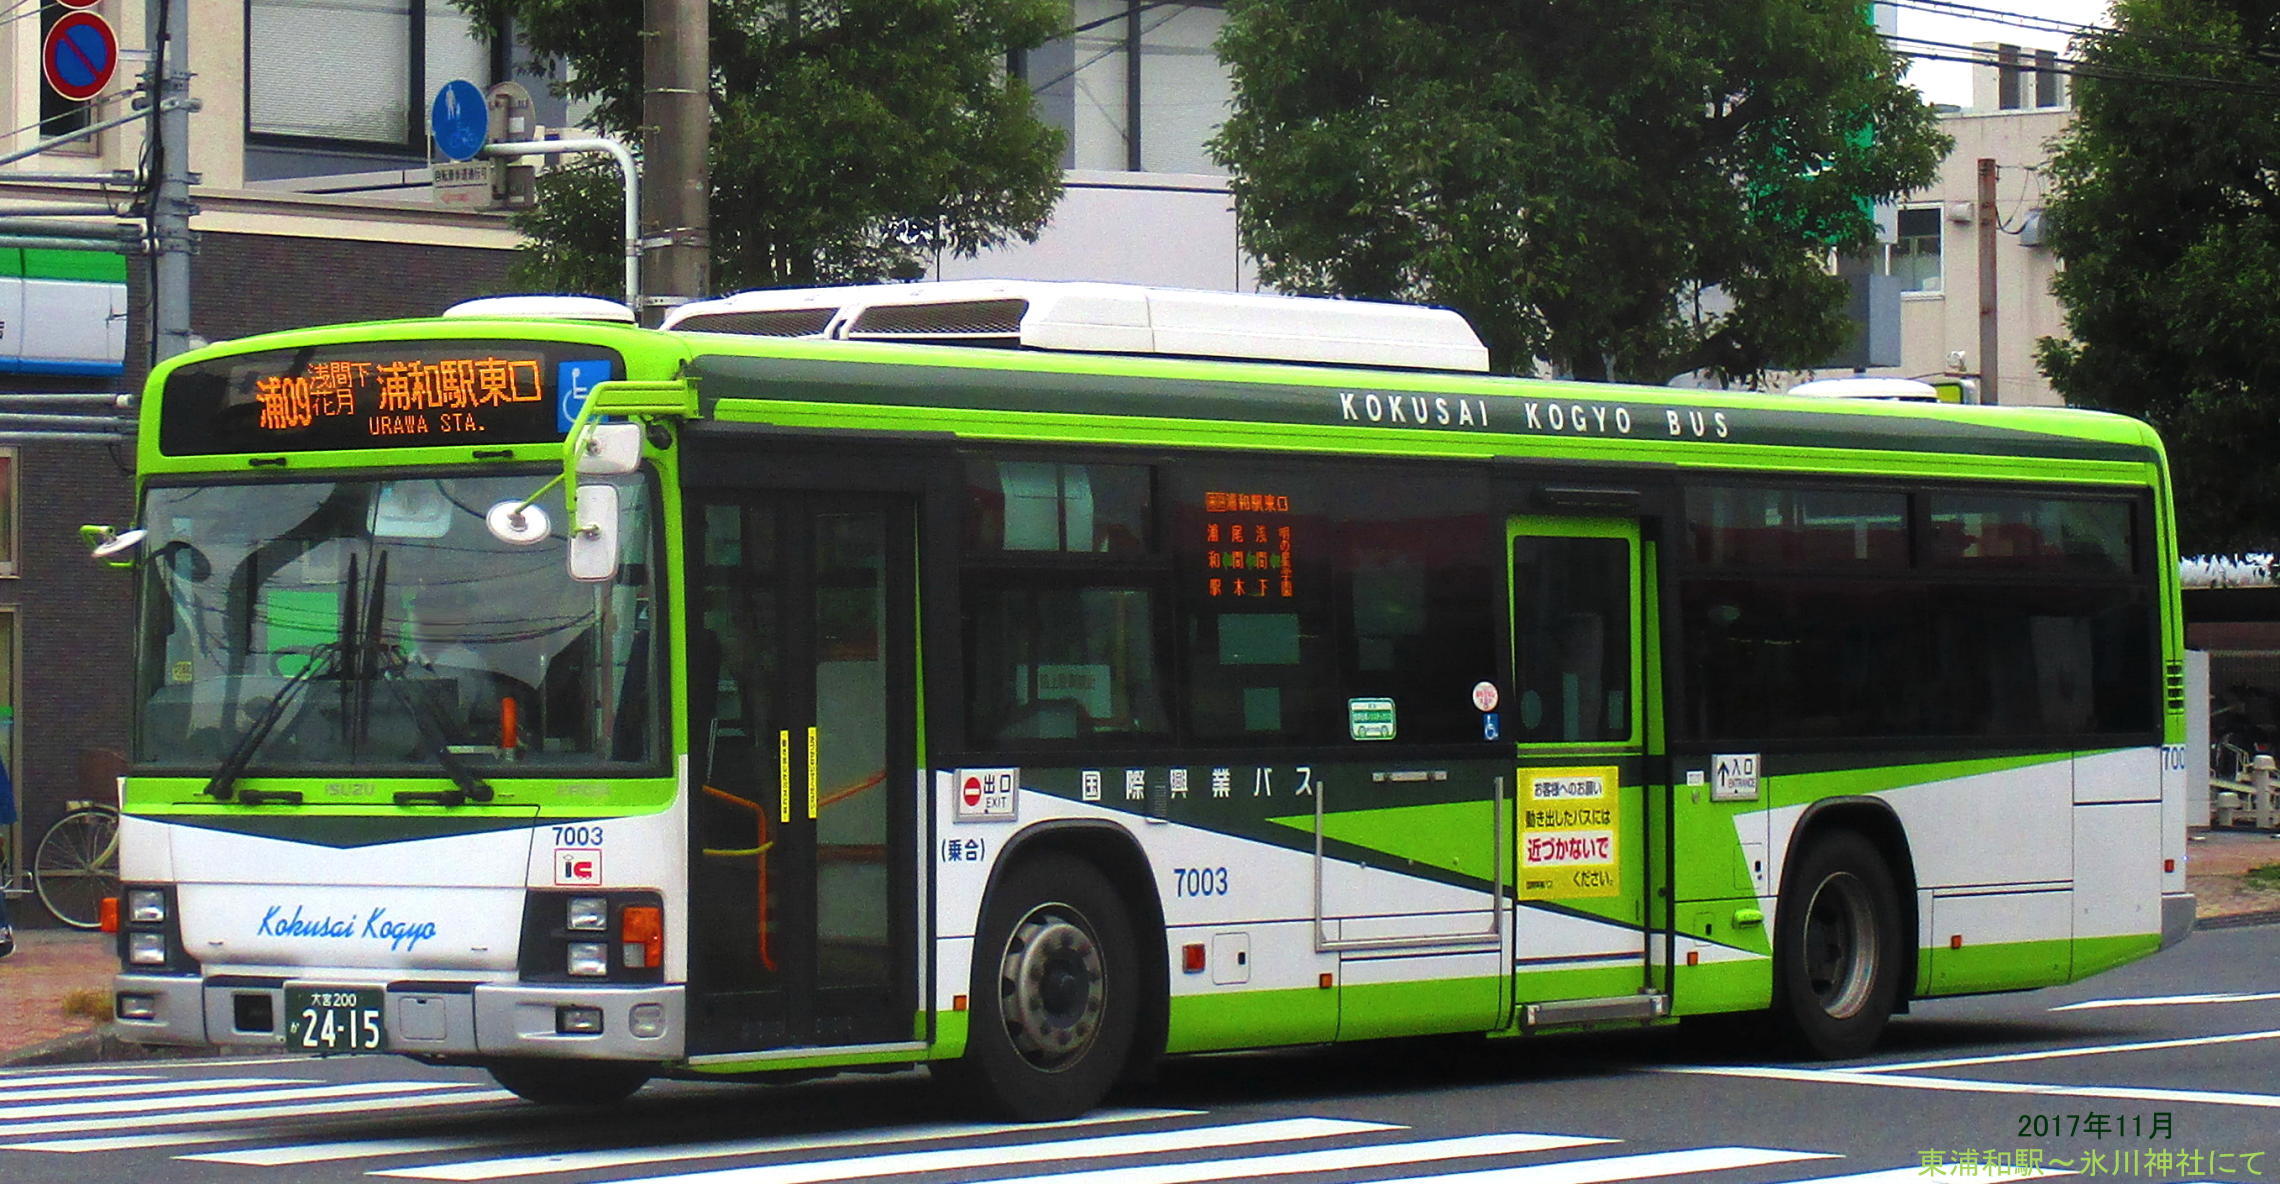 国際興業 浦和駅東口発着路線 Bus Line Up